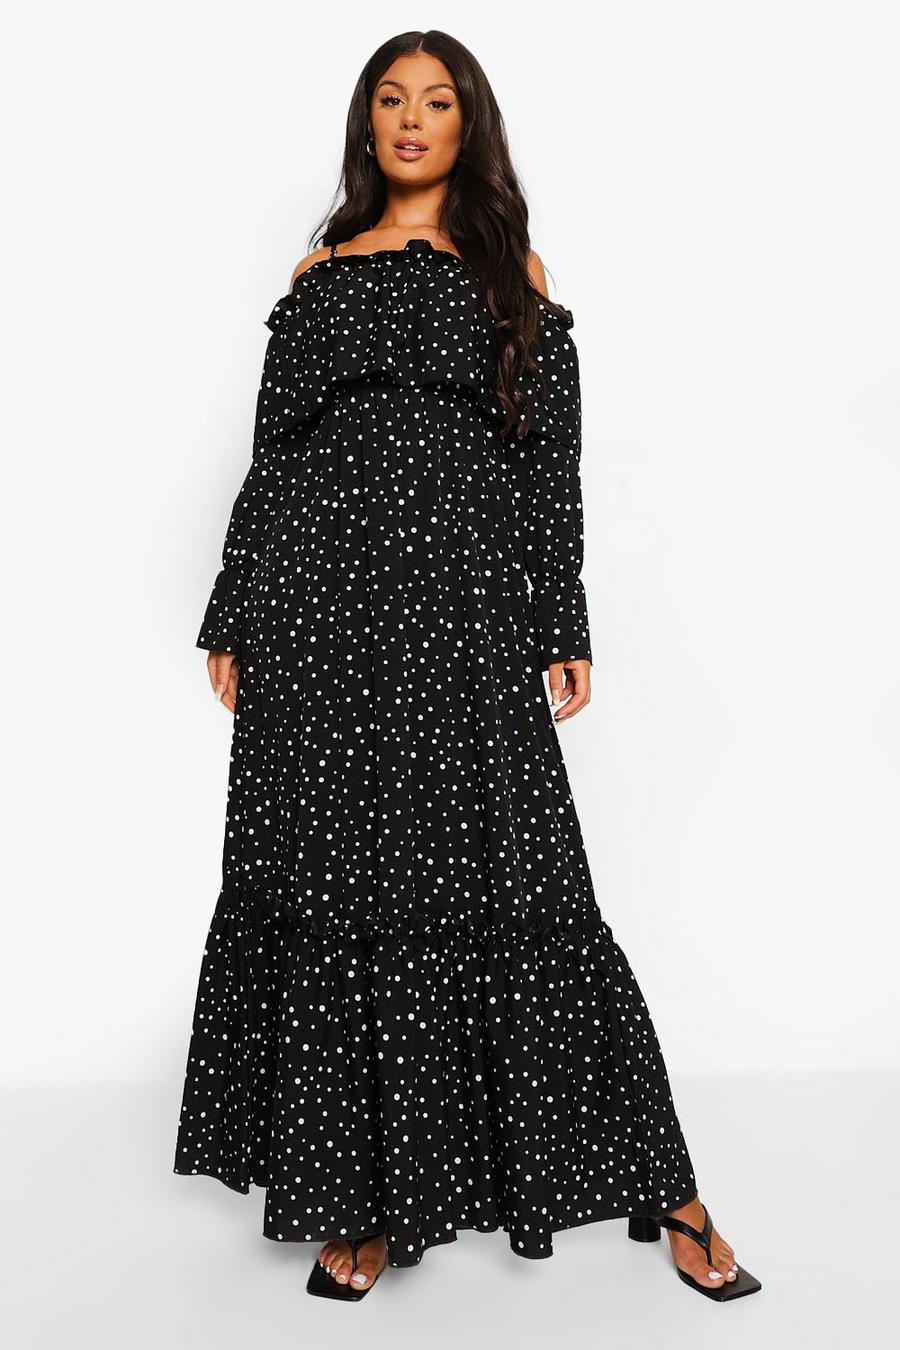 Black Polka Dot Cold Shoulder Ruffle Maxi Dress image number 1